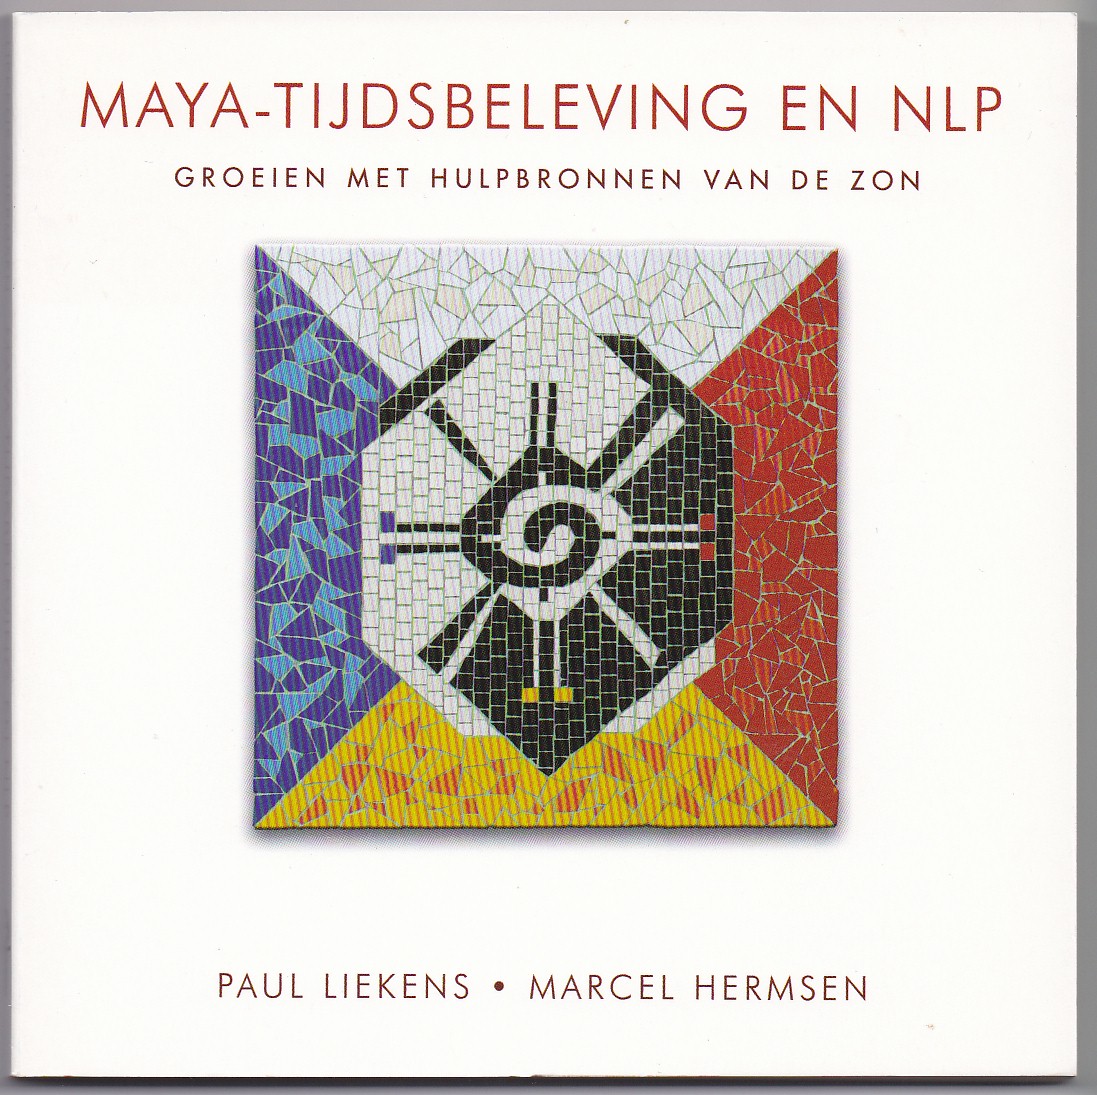 Liekens, Paul en Hermsen, Marcel - Maya-tijdsbeleving en NLP. Groeien met hulpbronnen van de zon